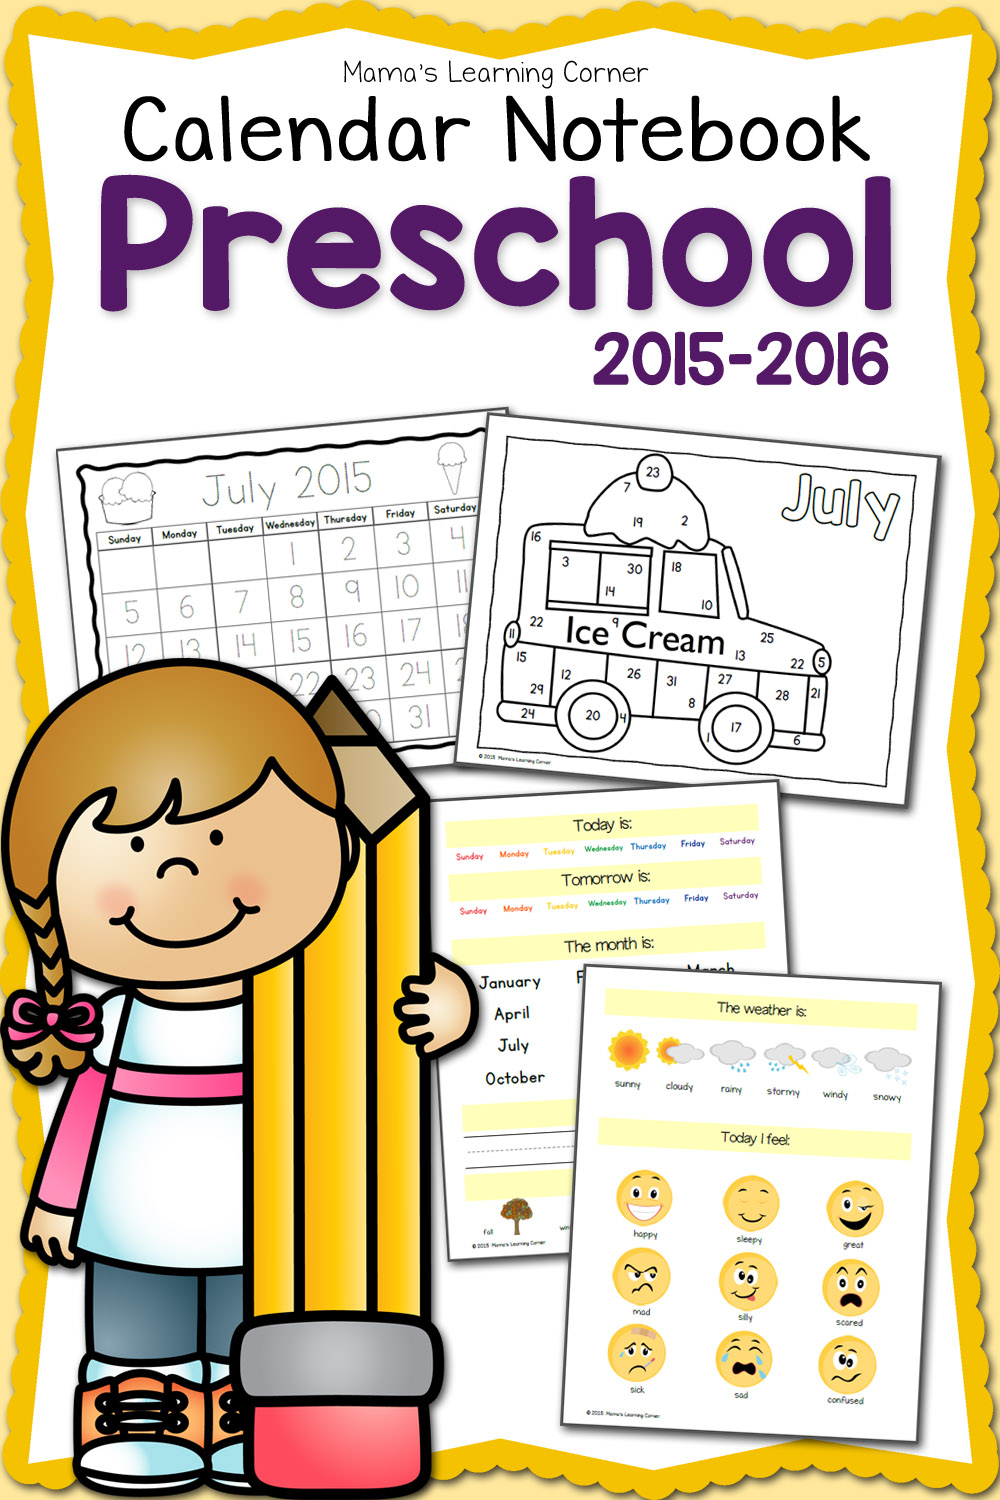 Preschool Calendar Notebook 2015 2016 - Can A 4 Year Old Start Kindergarten